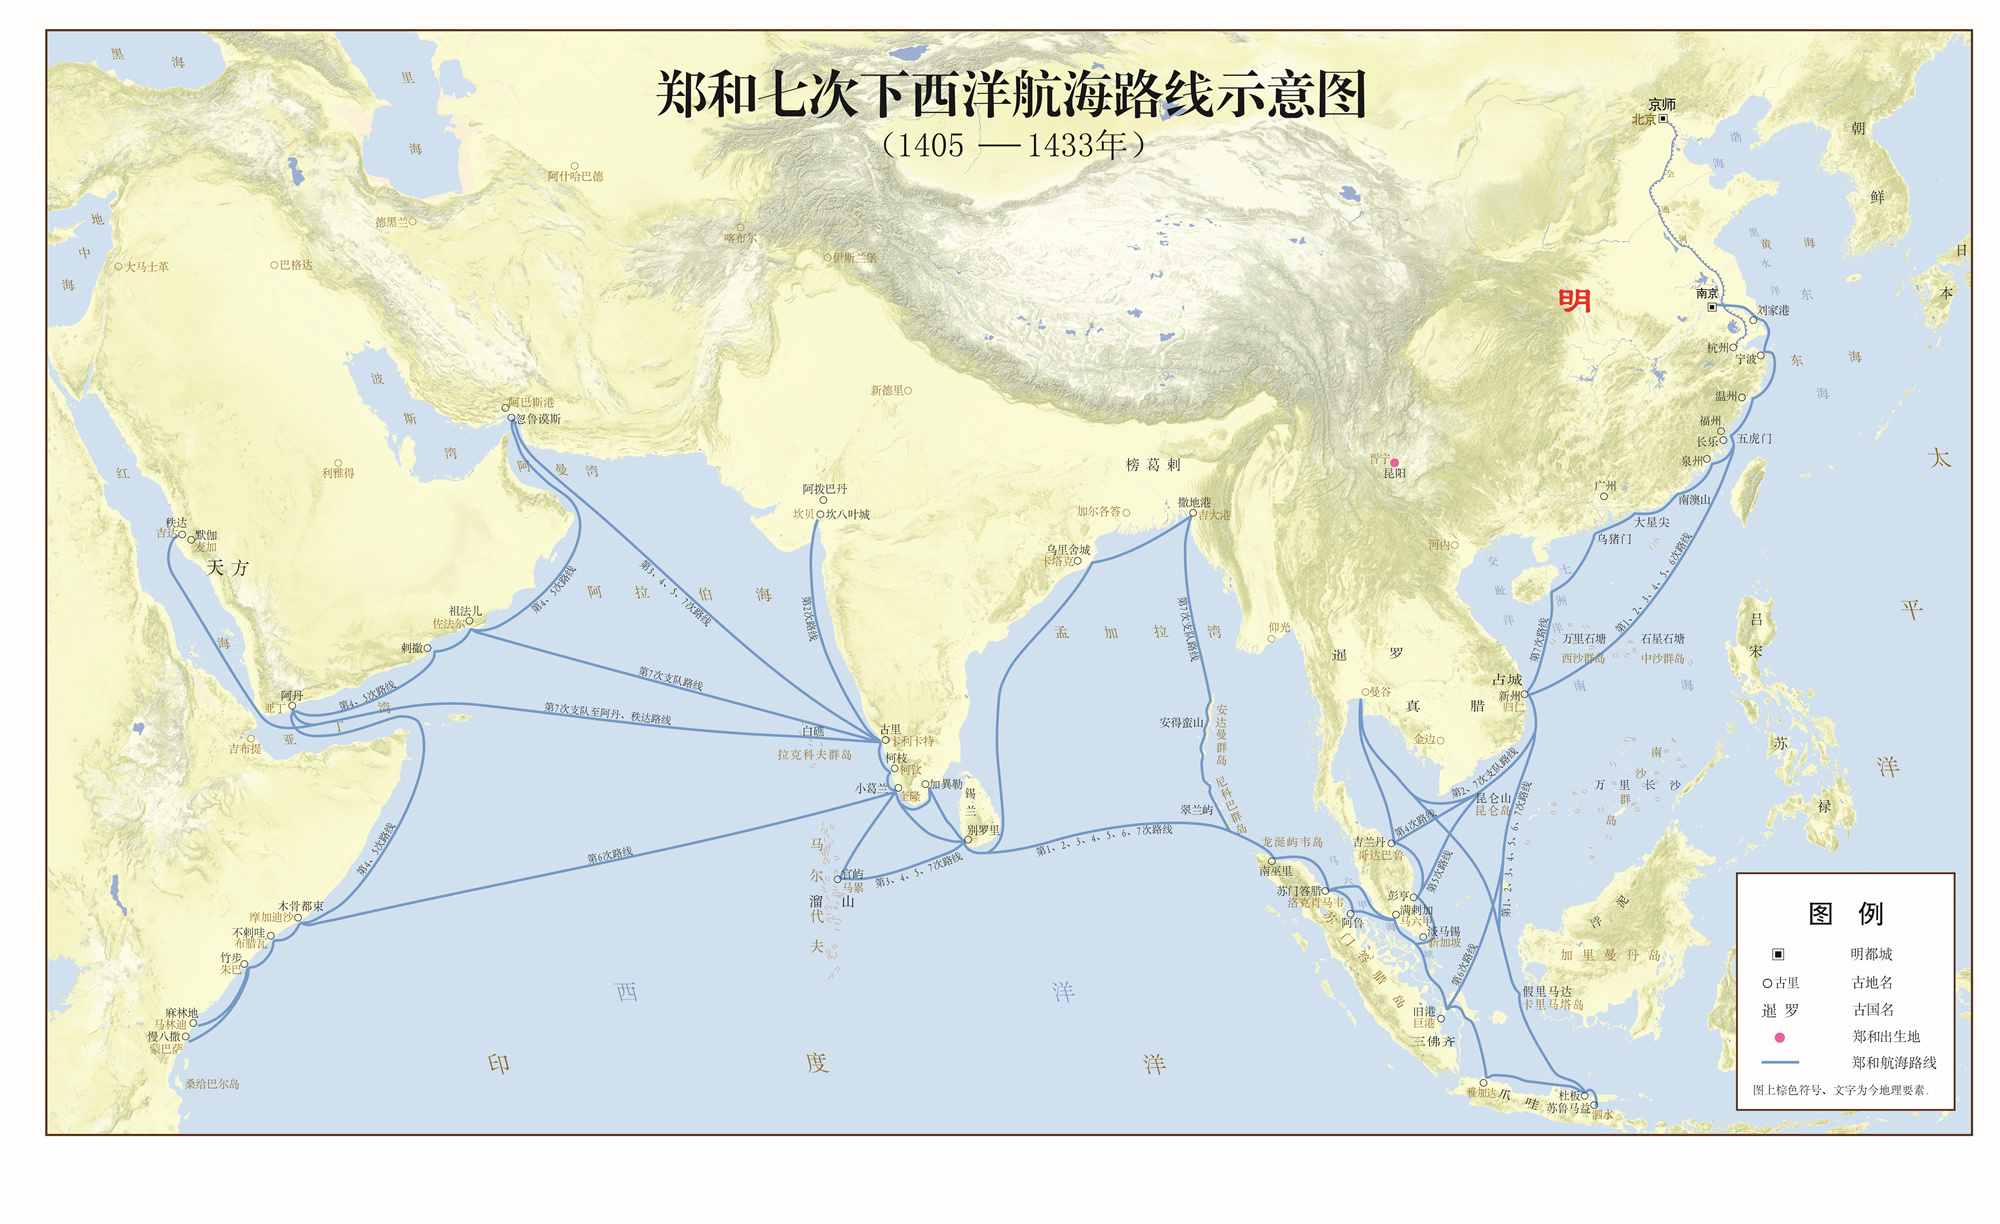 郑和七次下西洋航海路线示意图.jpg